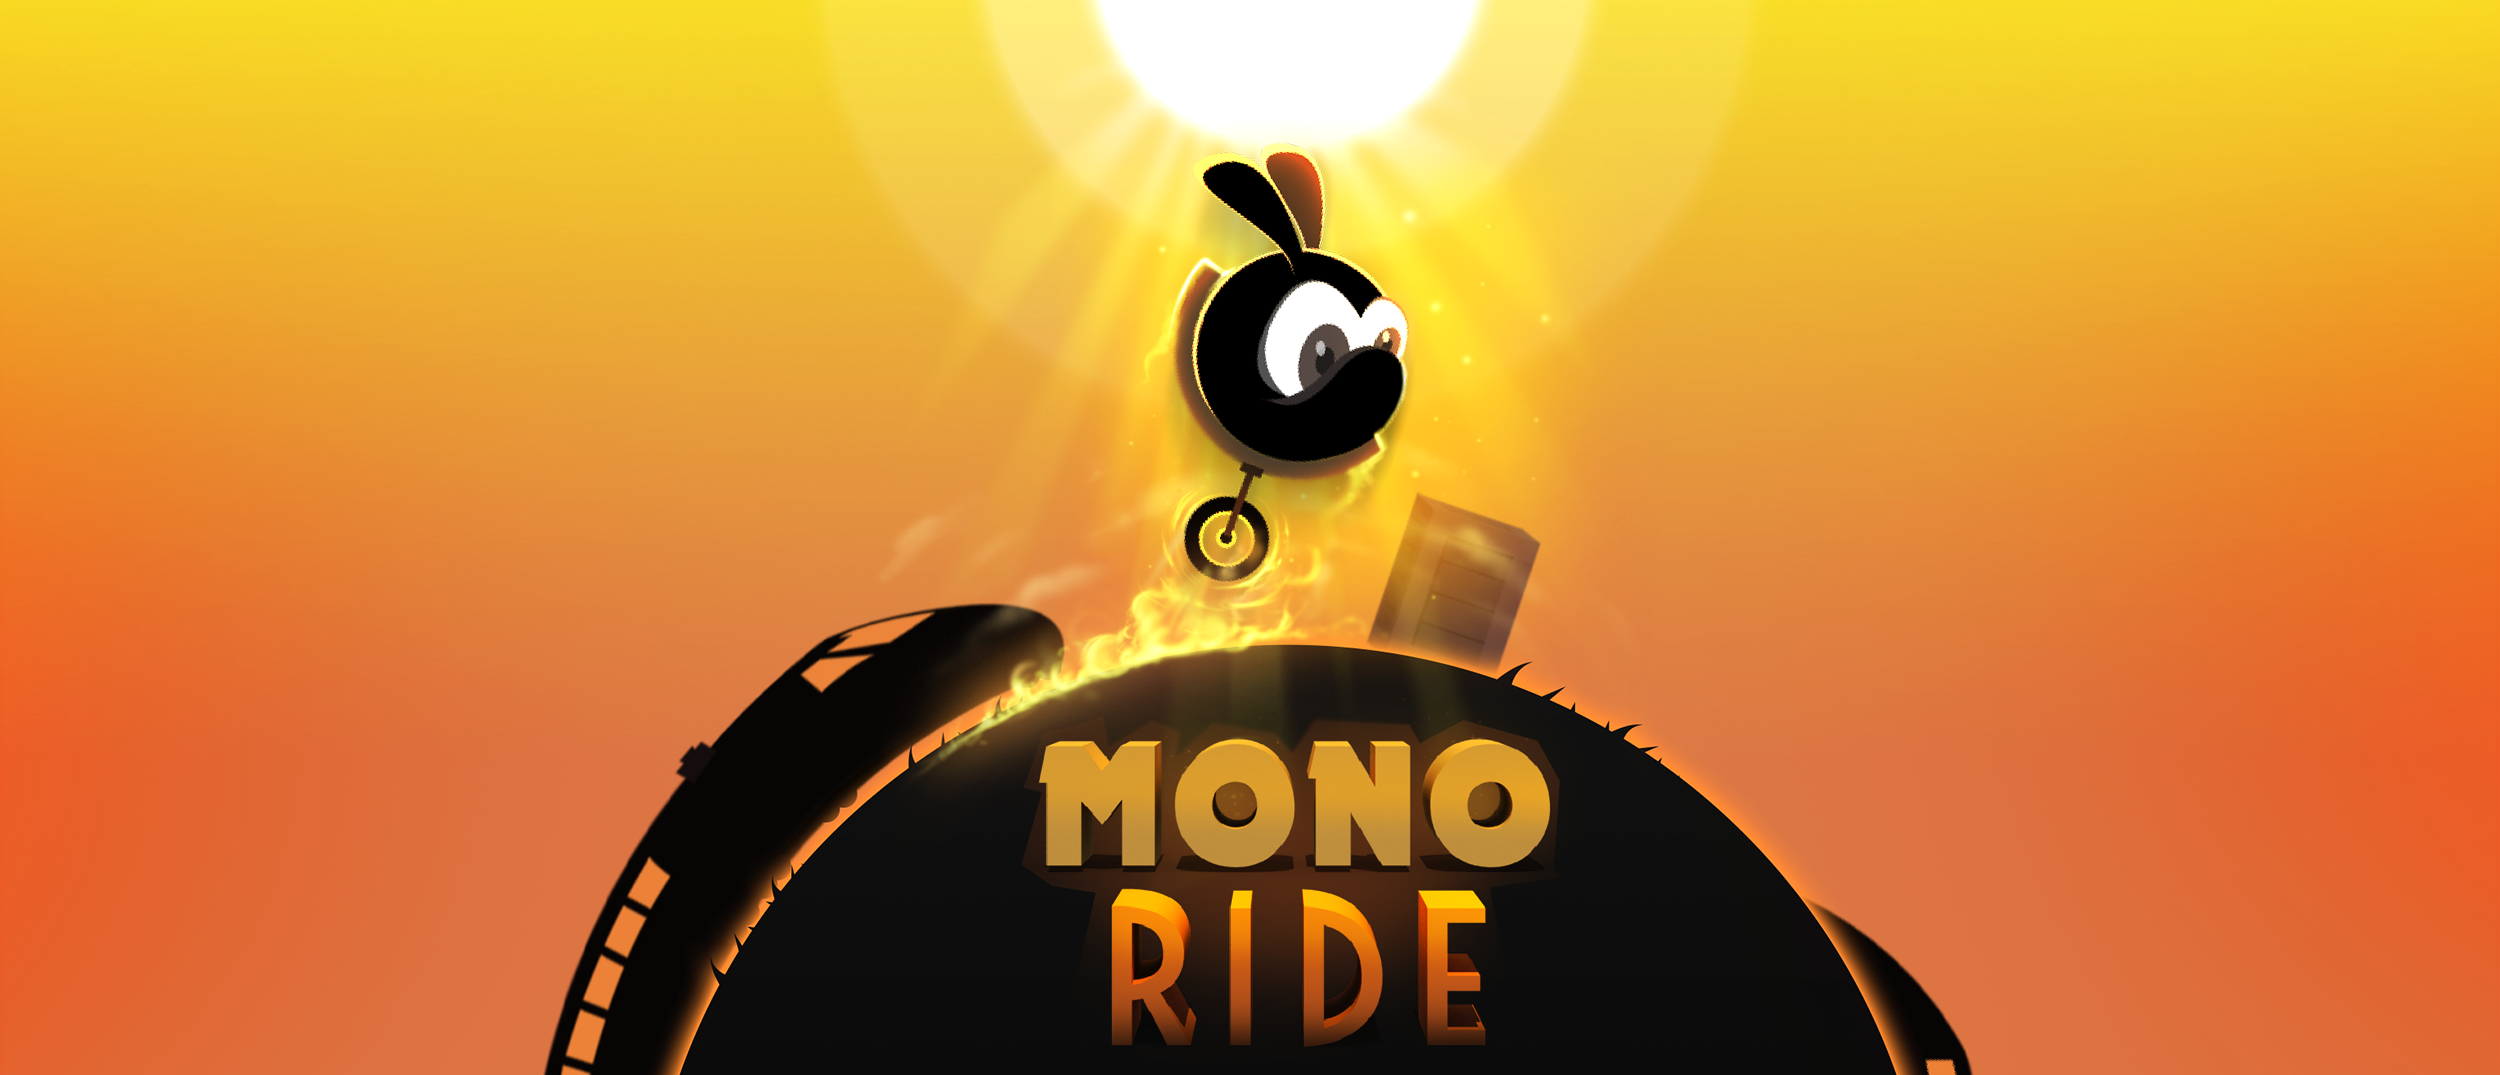 Mono Ride